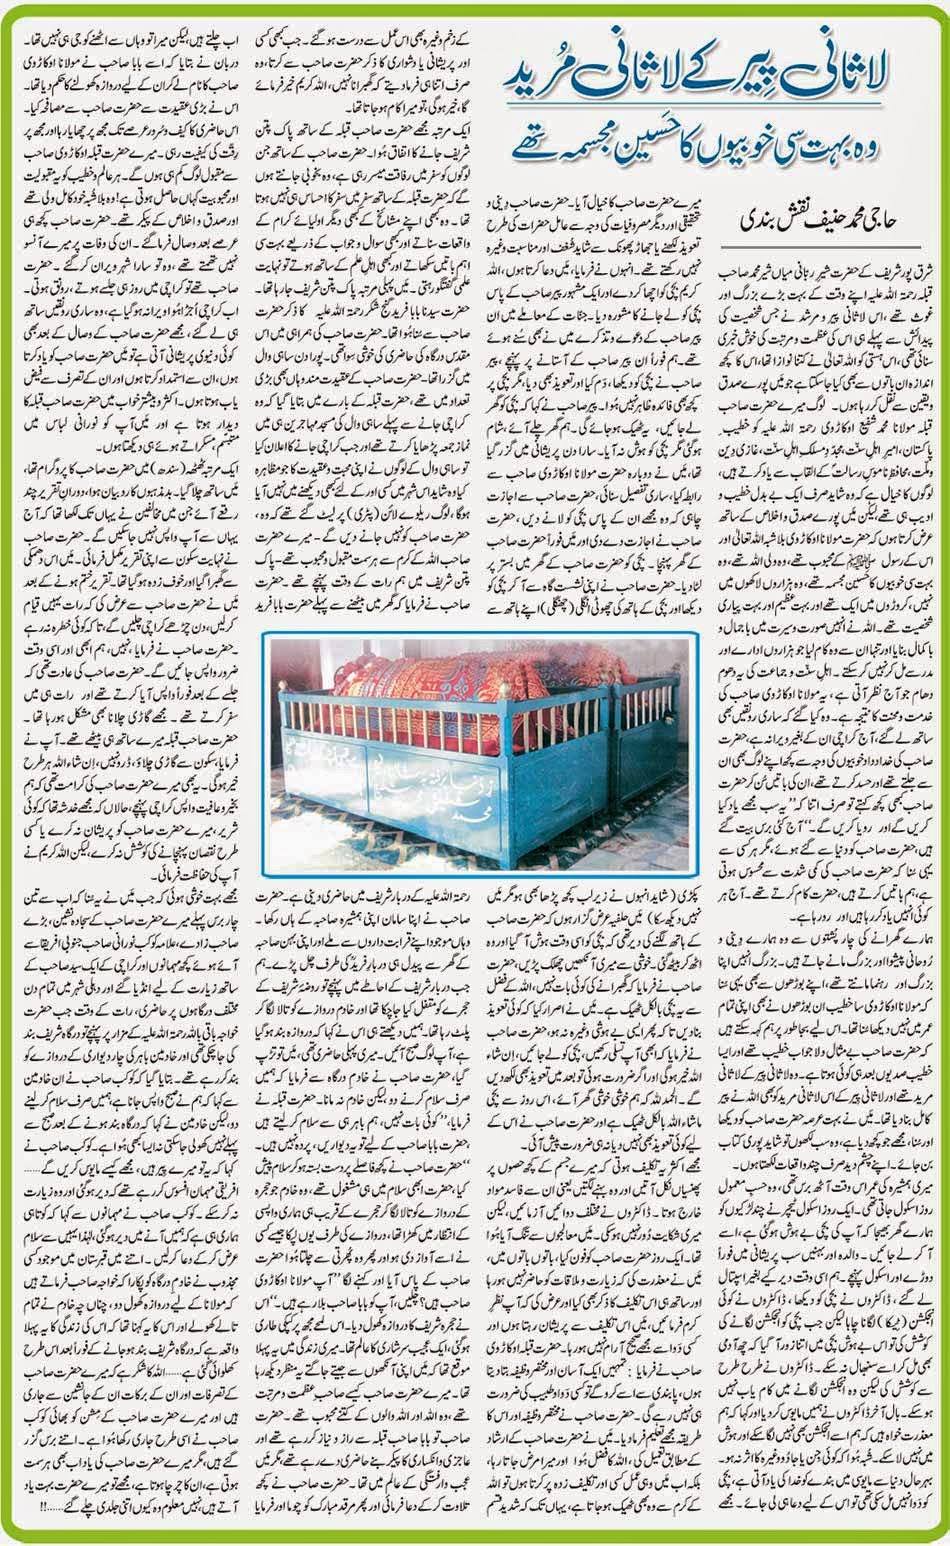 Laasaani Peer kay Laasaani Mureed-Newspaper Article- Hajj allama kaukab noorani okarvi